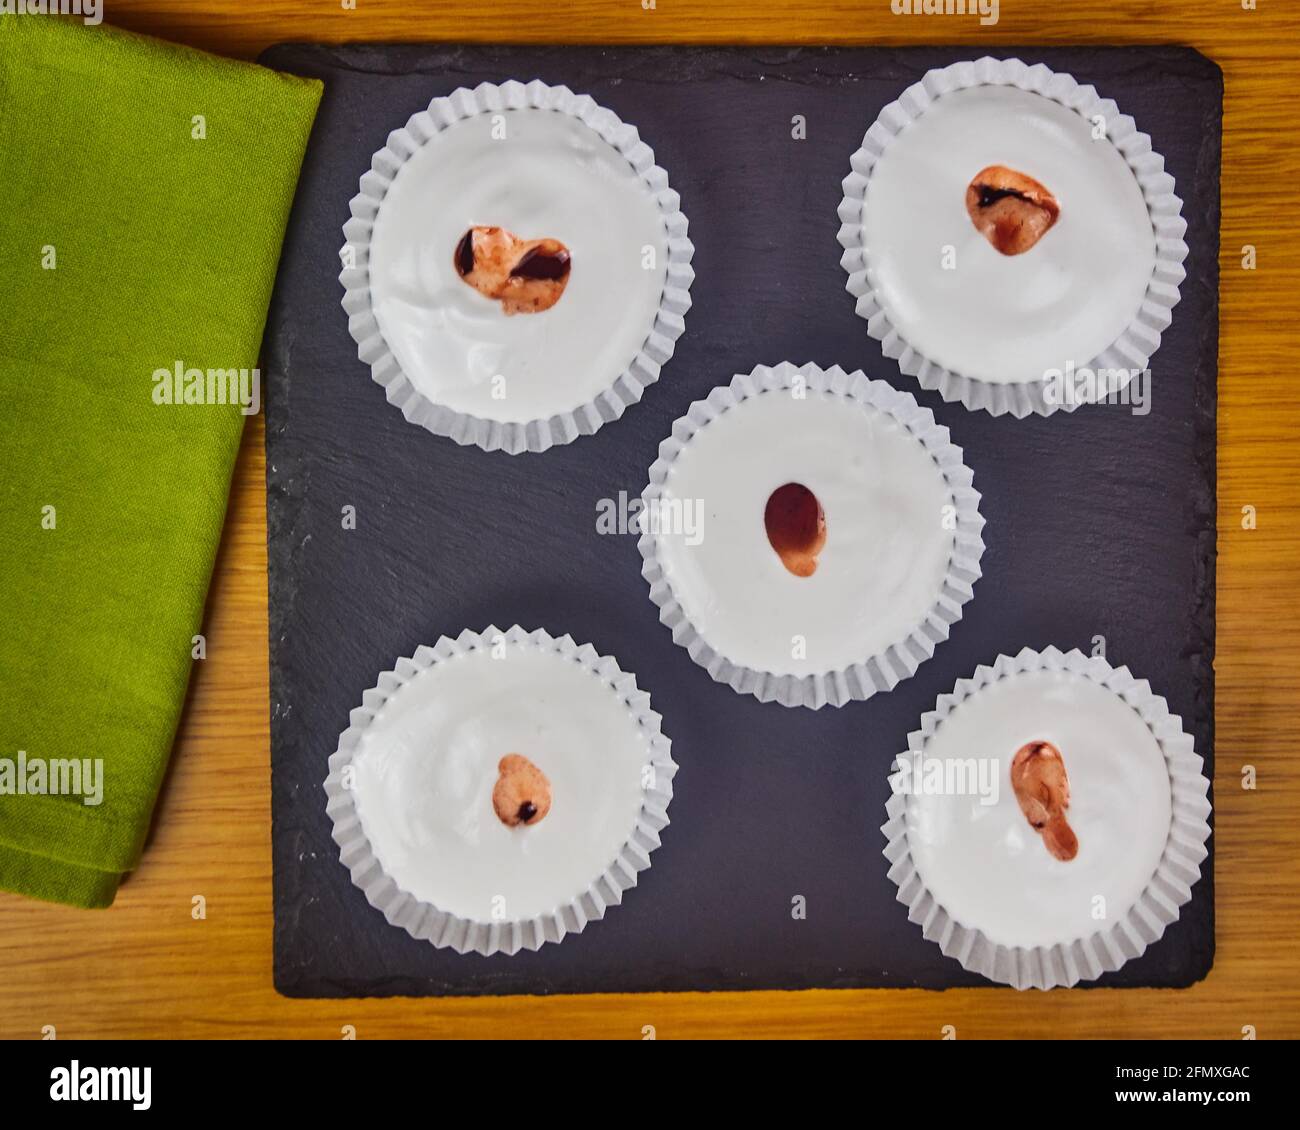 Mehrere rohe französische Dessert-Meringues mit Erdbeersauce, verziert mit einer Serviette auf einem Holztisch und einem schwarzen Schieferbrett. Draufsicht Stockfoto